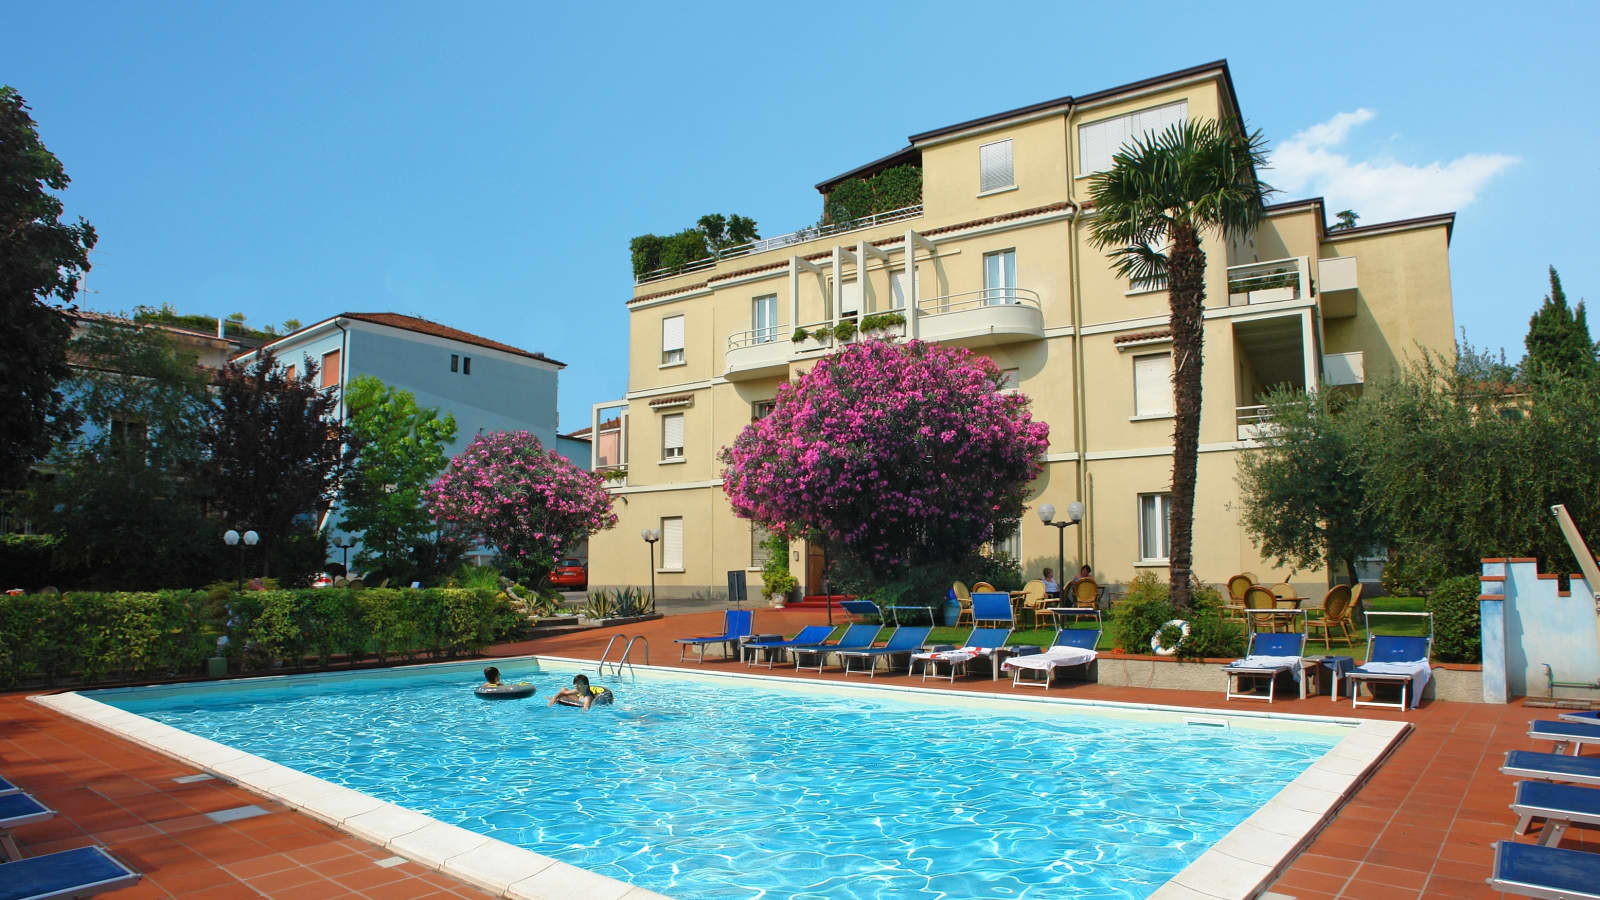 Hotel Benaco - Desenzano, Lake Garda